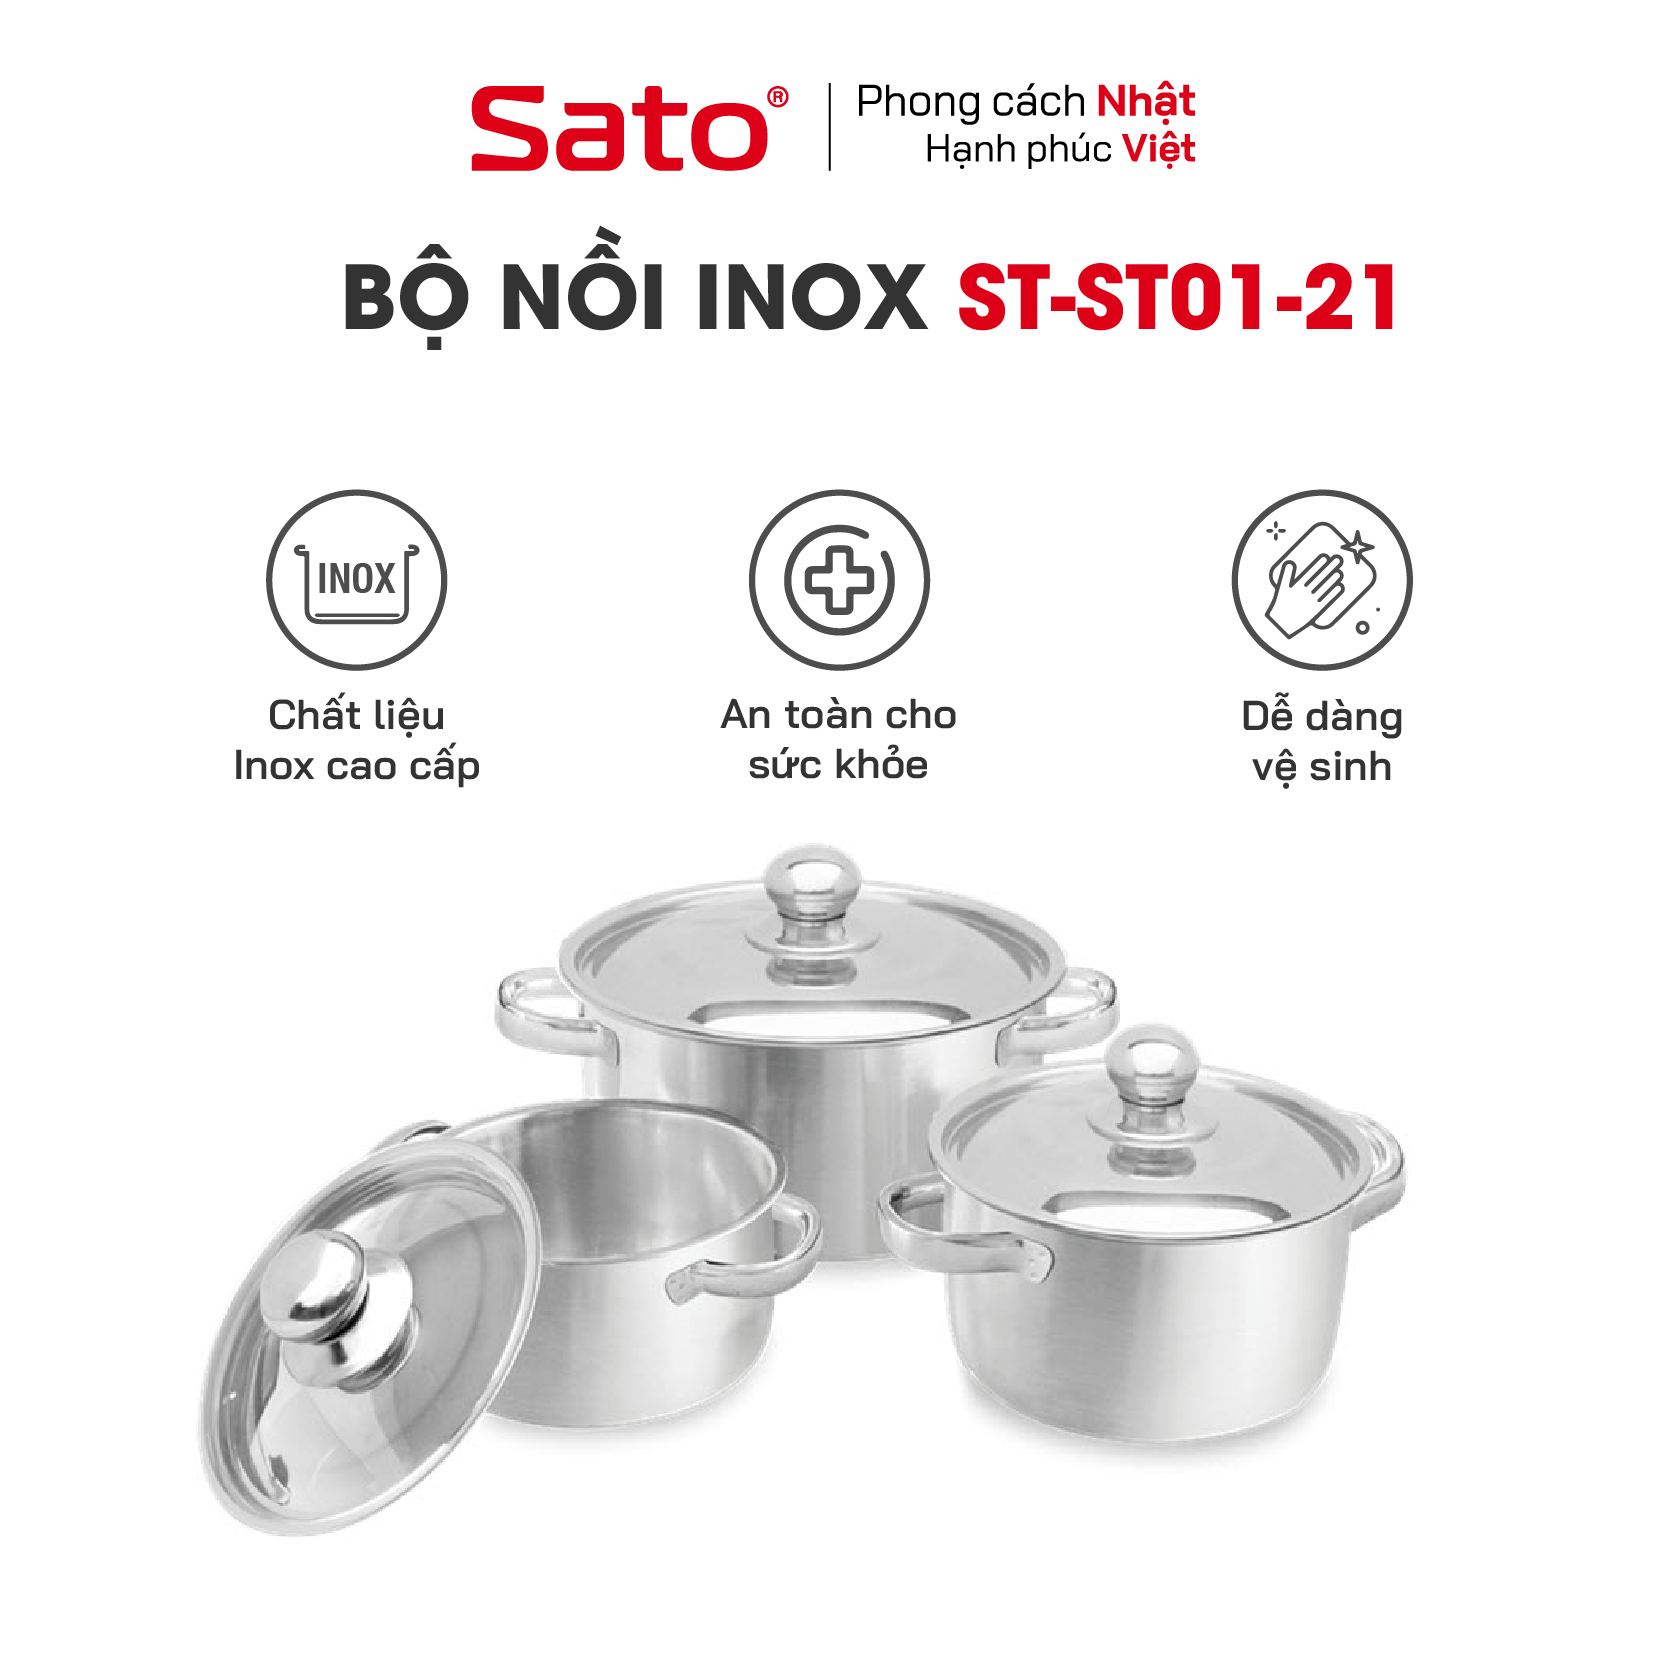 Bộ nồi inox 1 đáy SATO ST01-21 - Kiểu dáng sang trọng, hiện đại, nấu ăn tiện dụng, đa dạng kích cỡ: 16cm - 18cm - 24cm. Chất liệu inox cao cấp không bị oxy hoá, bền đẹp, sáng bóng an toàn cho sức khỏe - Miễn phí vận chuyển toàn quốc - Hàng chính hãng